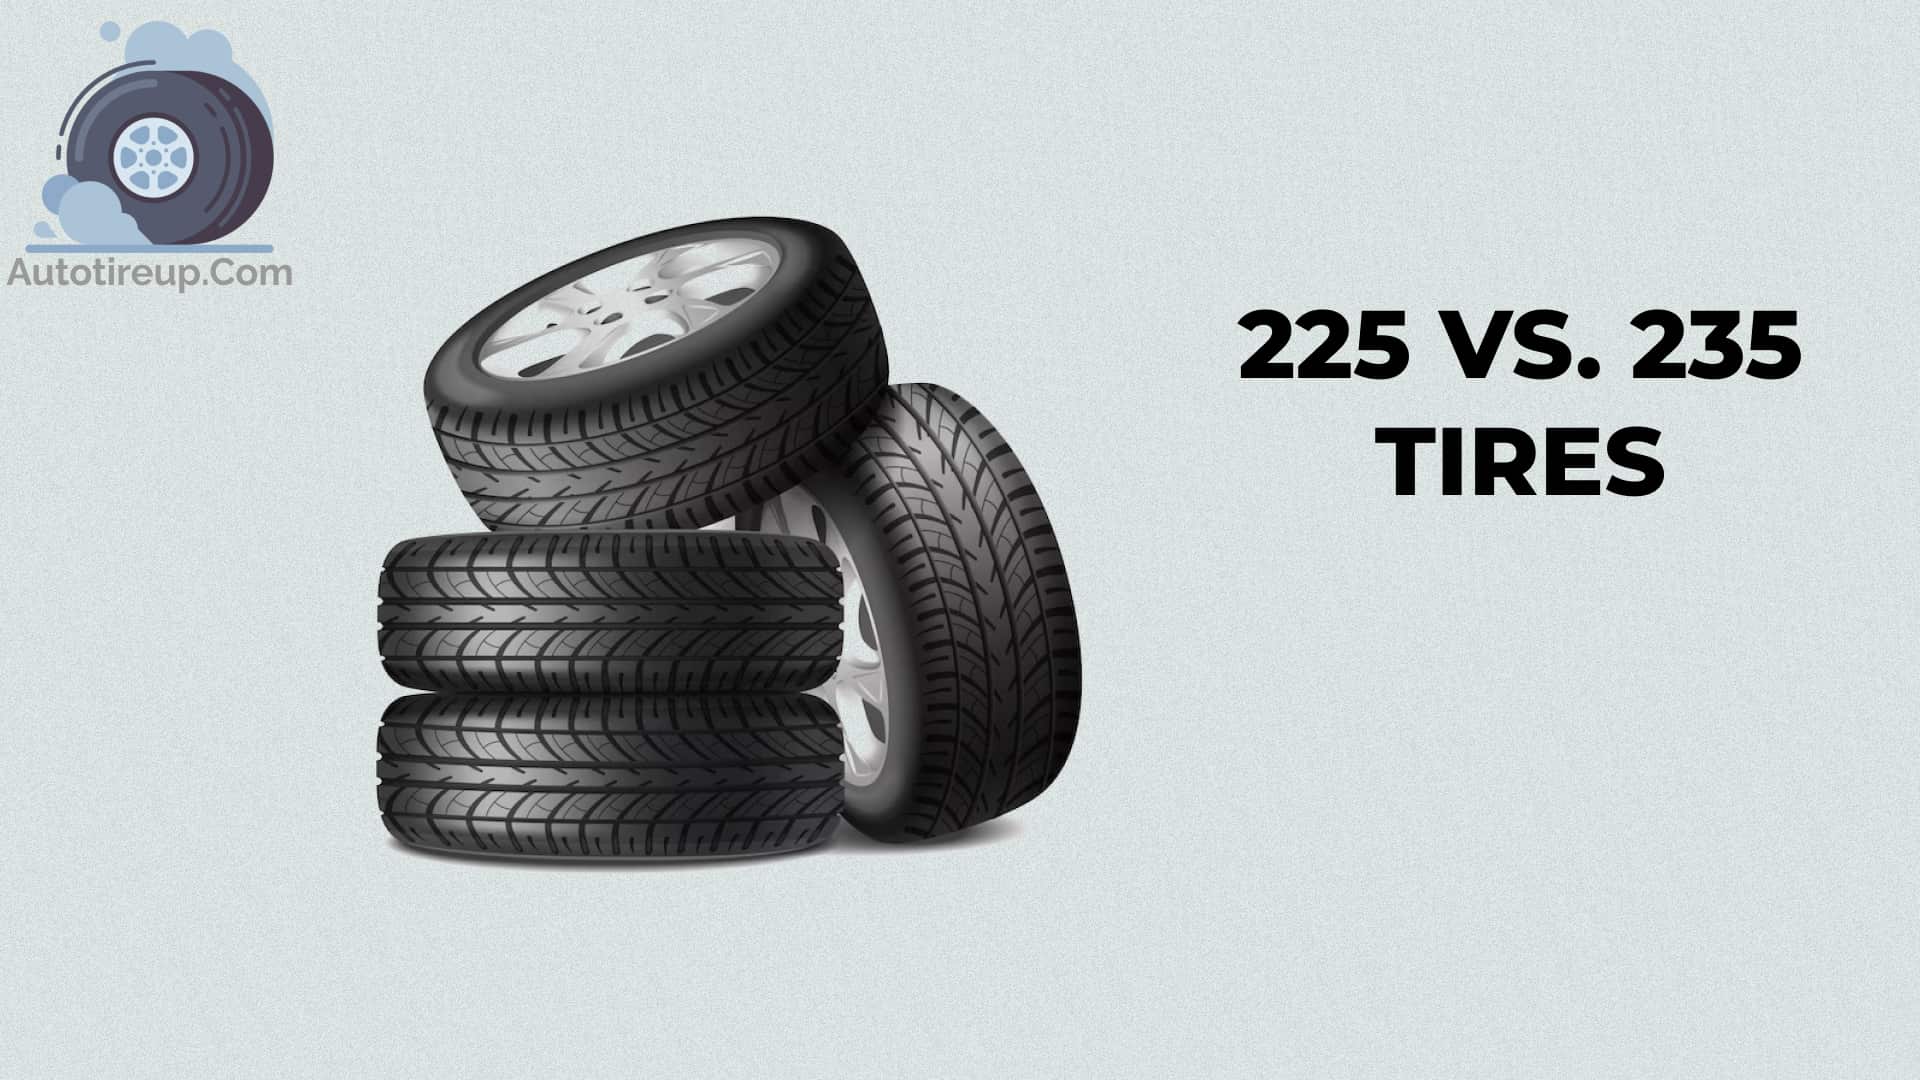 225 vs. 235 tires